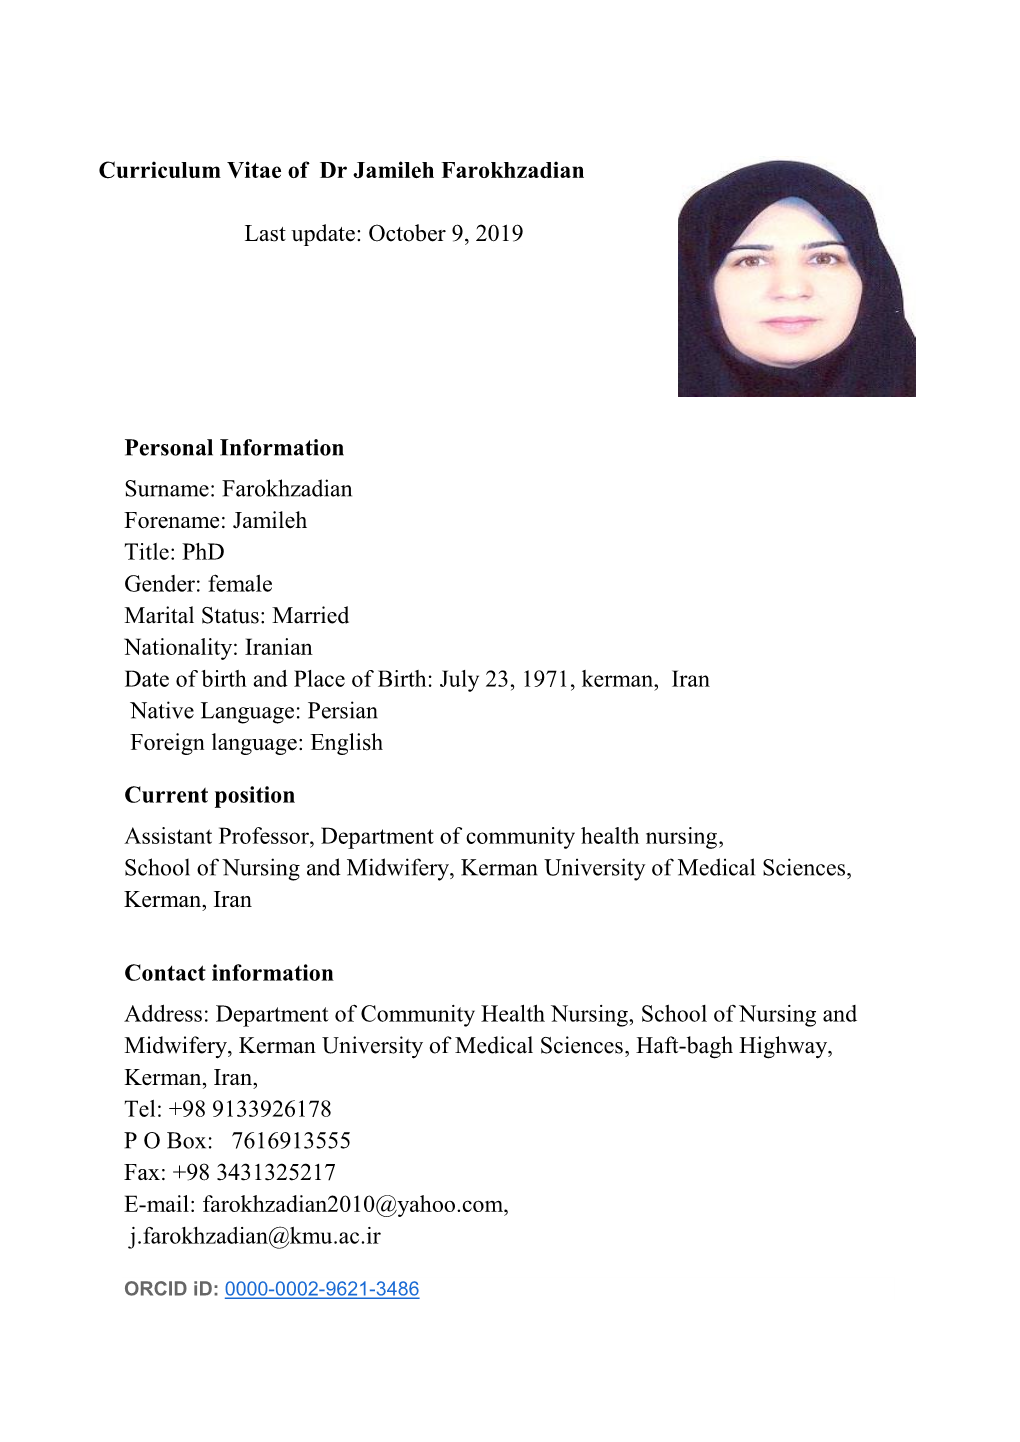 Curriculum Vitae of Dr Jamileh Farokhzadian 9 , 201 9 : October